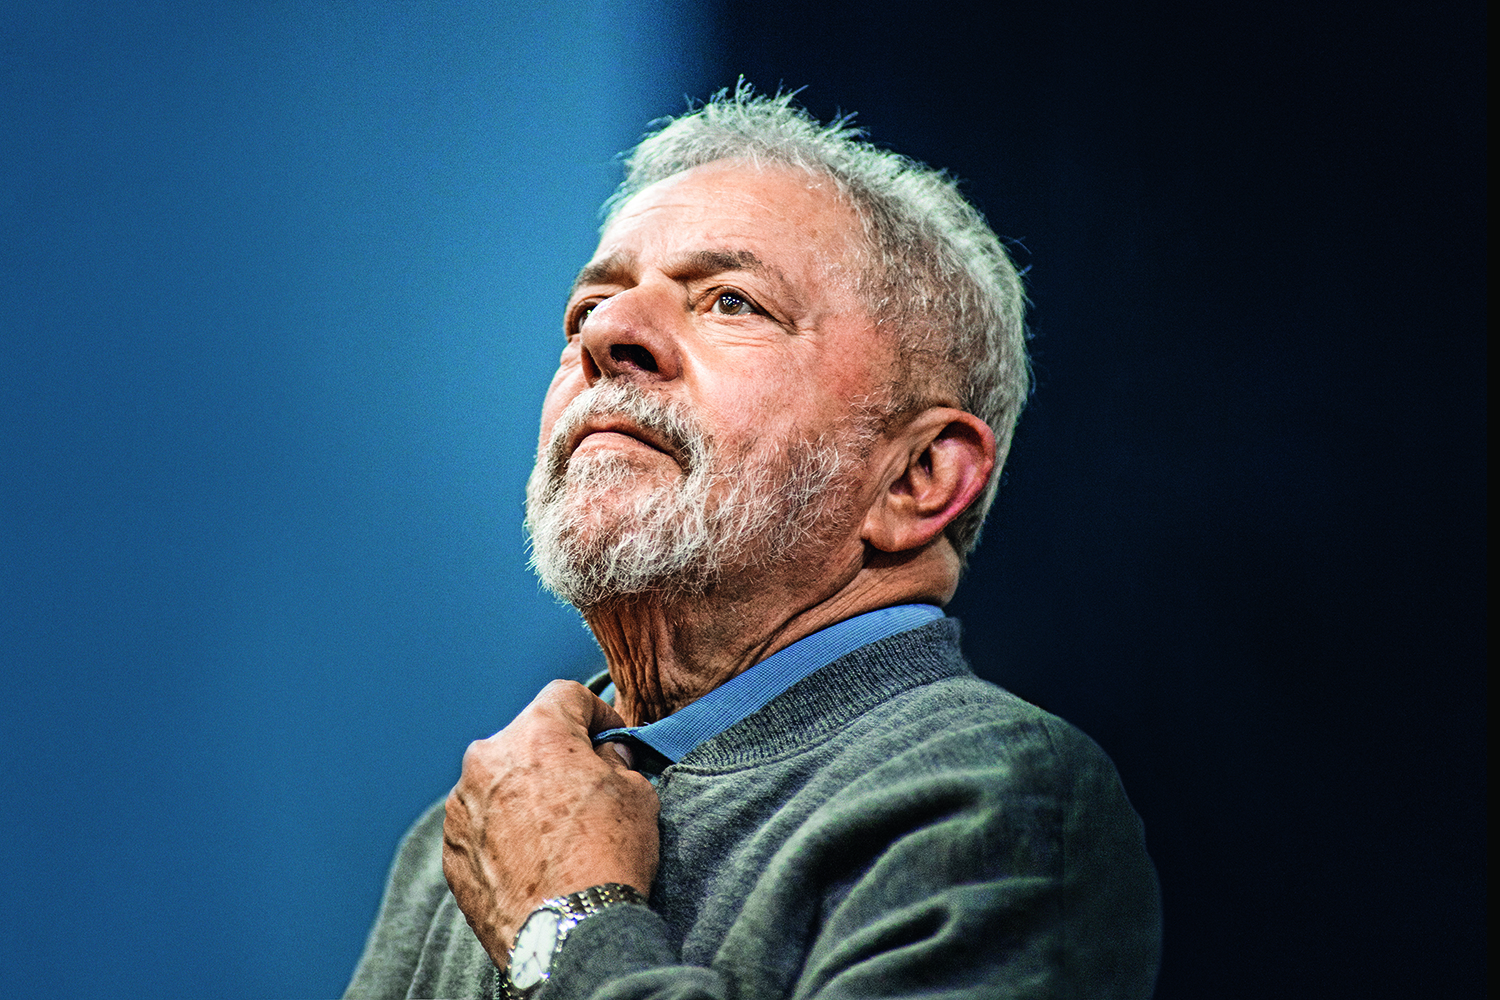 O ex-presidente Luiz Inácio Lula da Silva participou da Plenária trabalho e desenvolvimento na cidade de São Paulo, no Sindicato dos Bancários, no centro de São Paulo - 09/09/2016